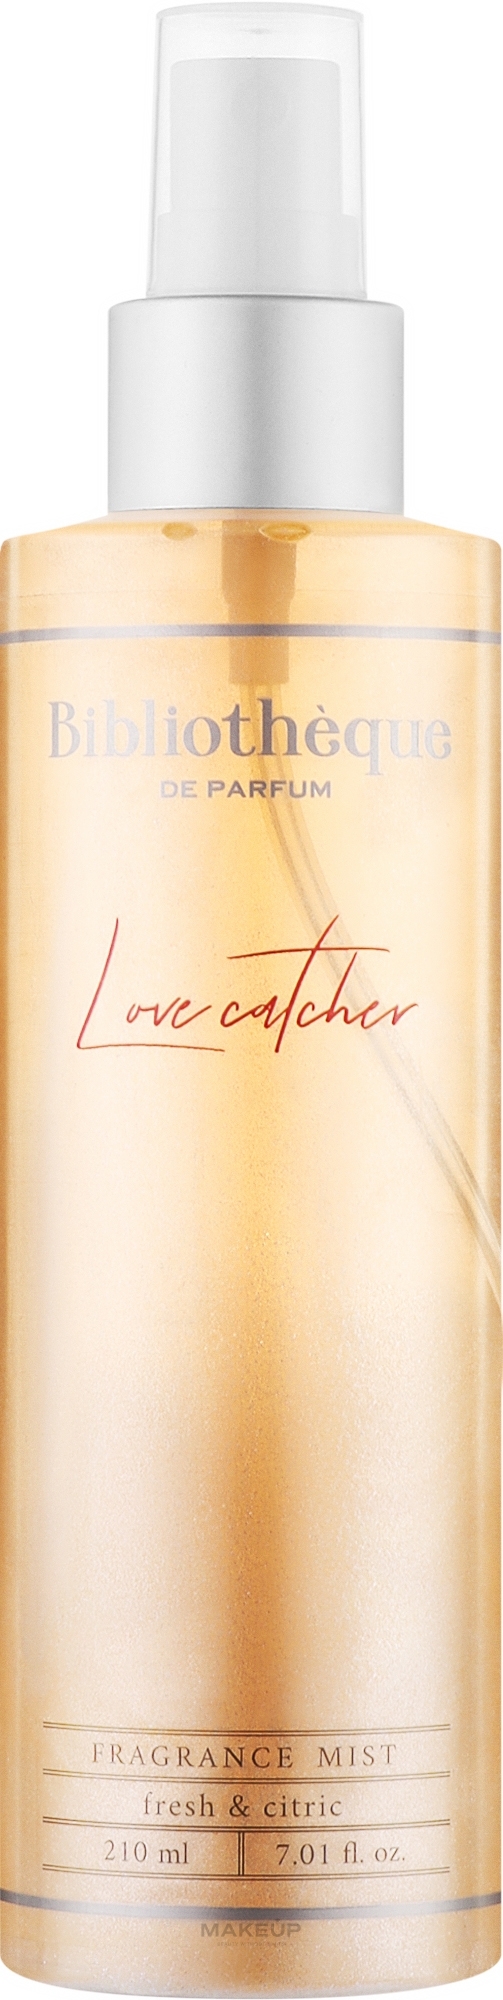 Bibliotheque de Parfum Love Catcher - Парфюмированный мист для тела с шиммером — фото 210ml